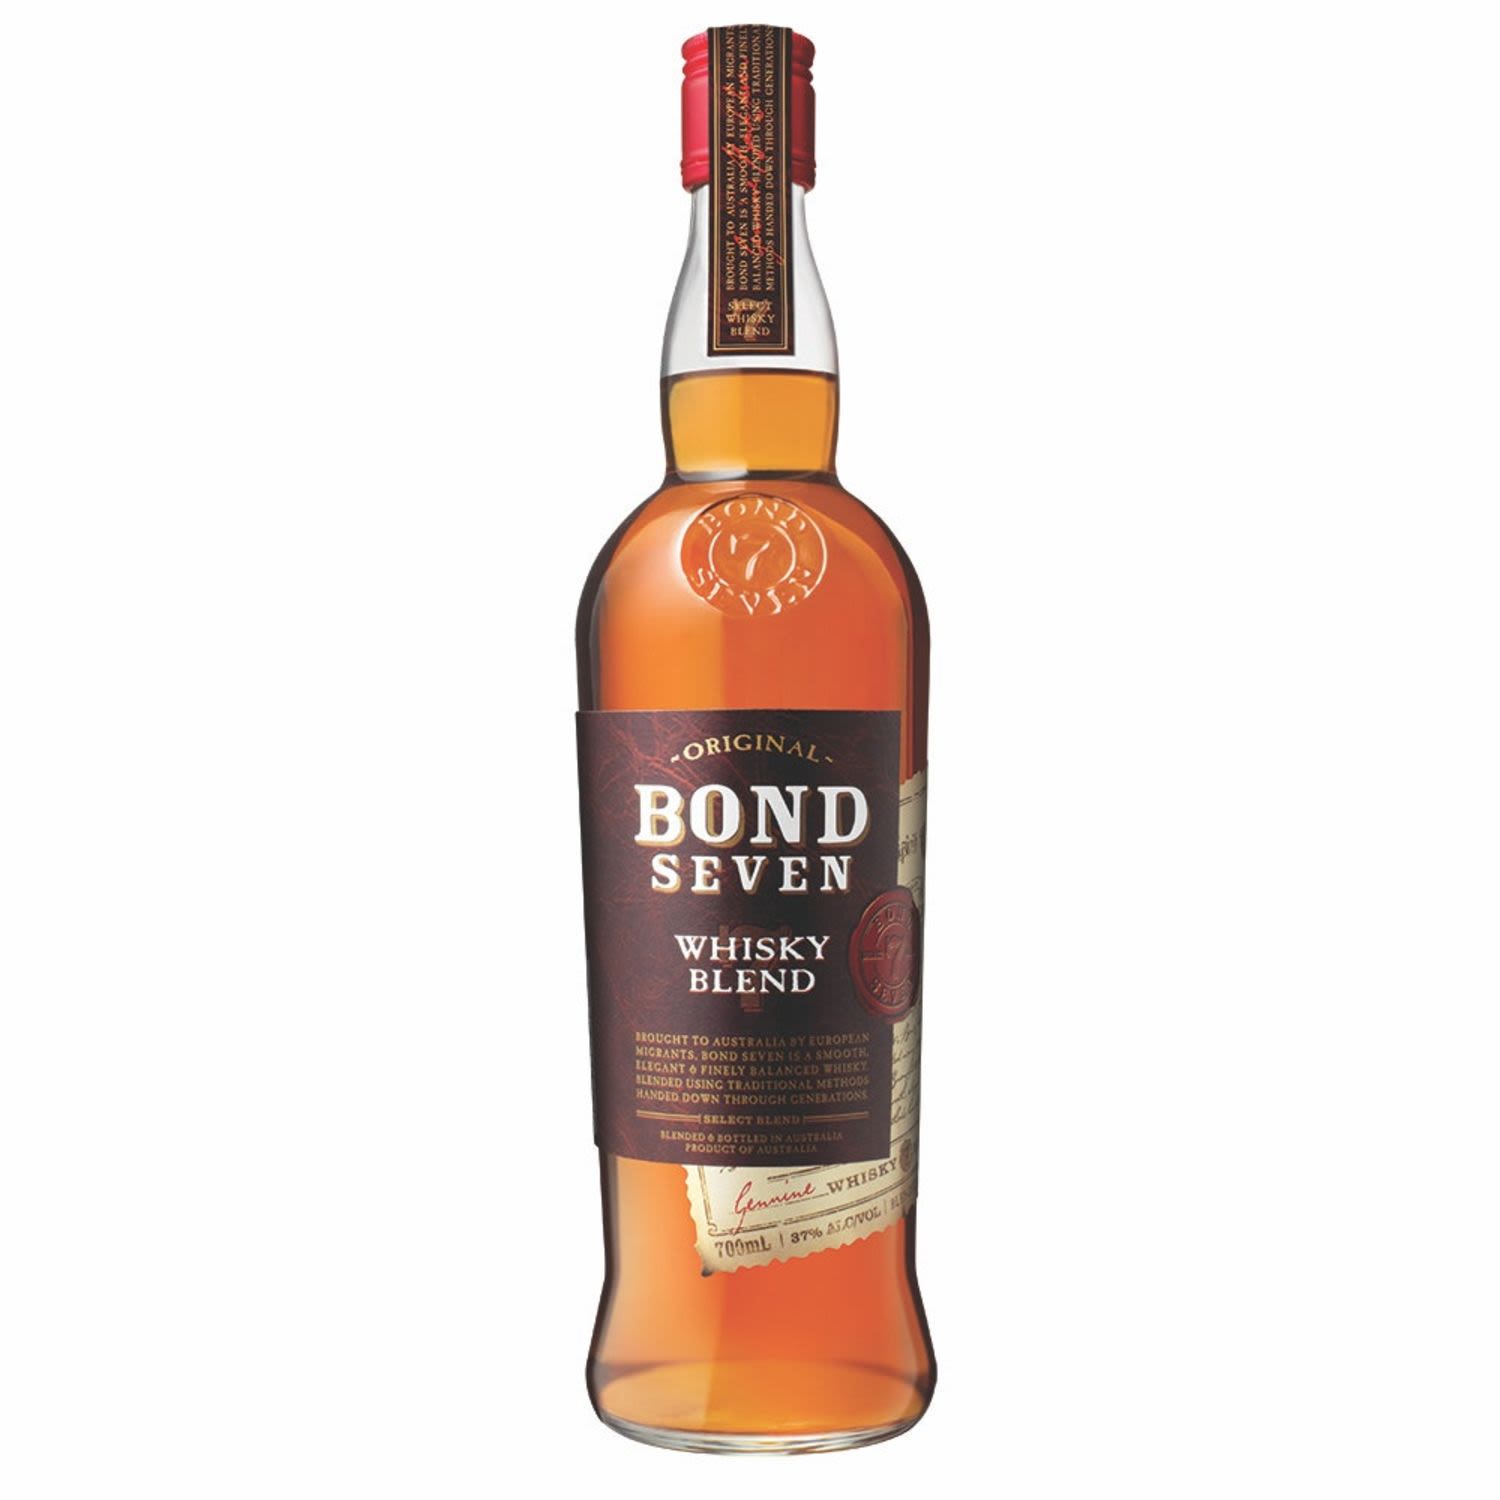 Bond Seven Whisky 700mL Bottle